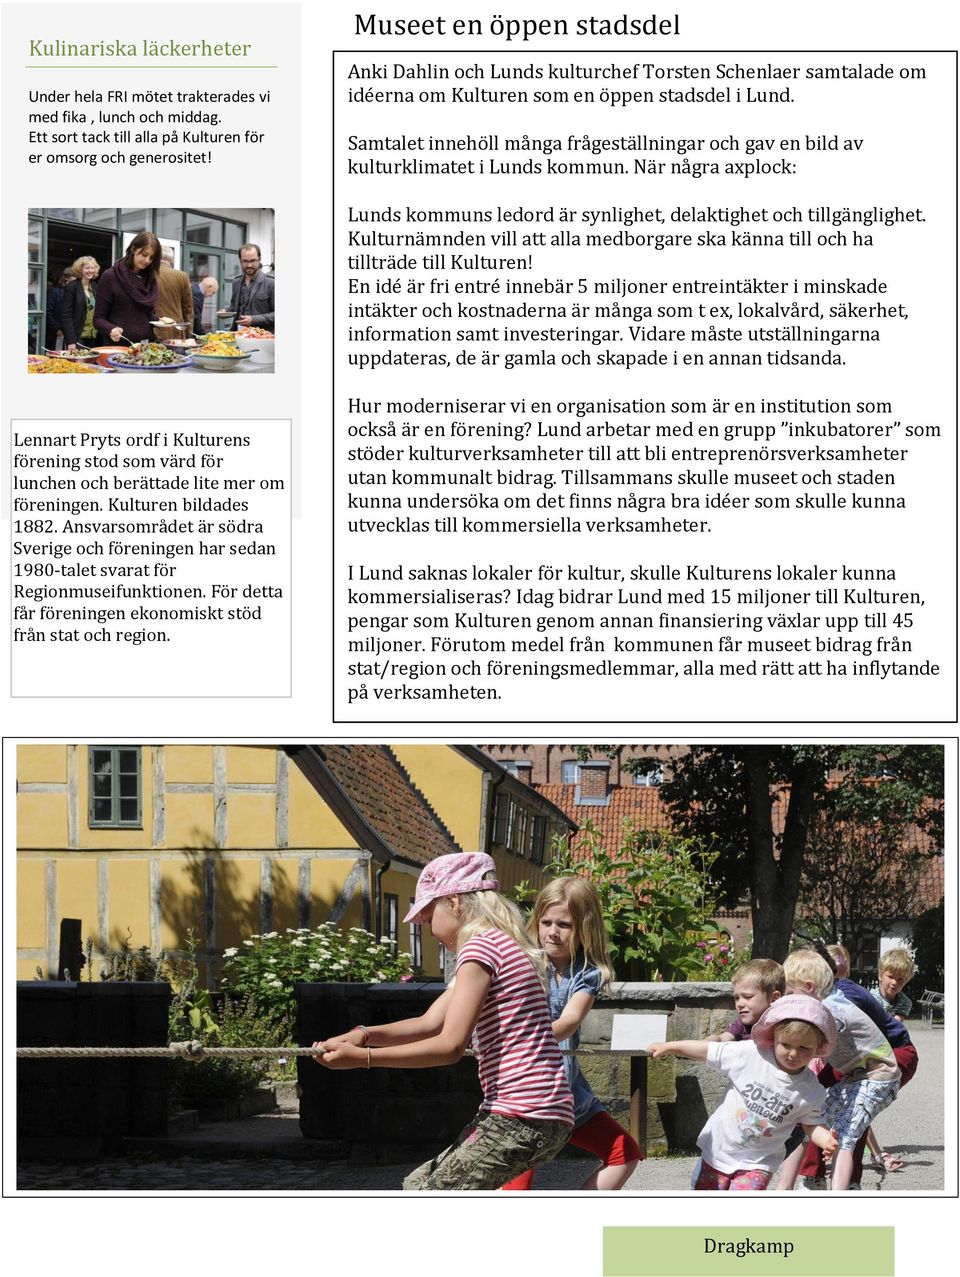 Samtalet innehöll många frågeställningar och gav en bild av kulturklimatet i Lunds kommun. När några axplock: Lunds kommuns ledord är synlighet, delaktighet och tillgänglighet.